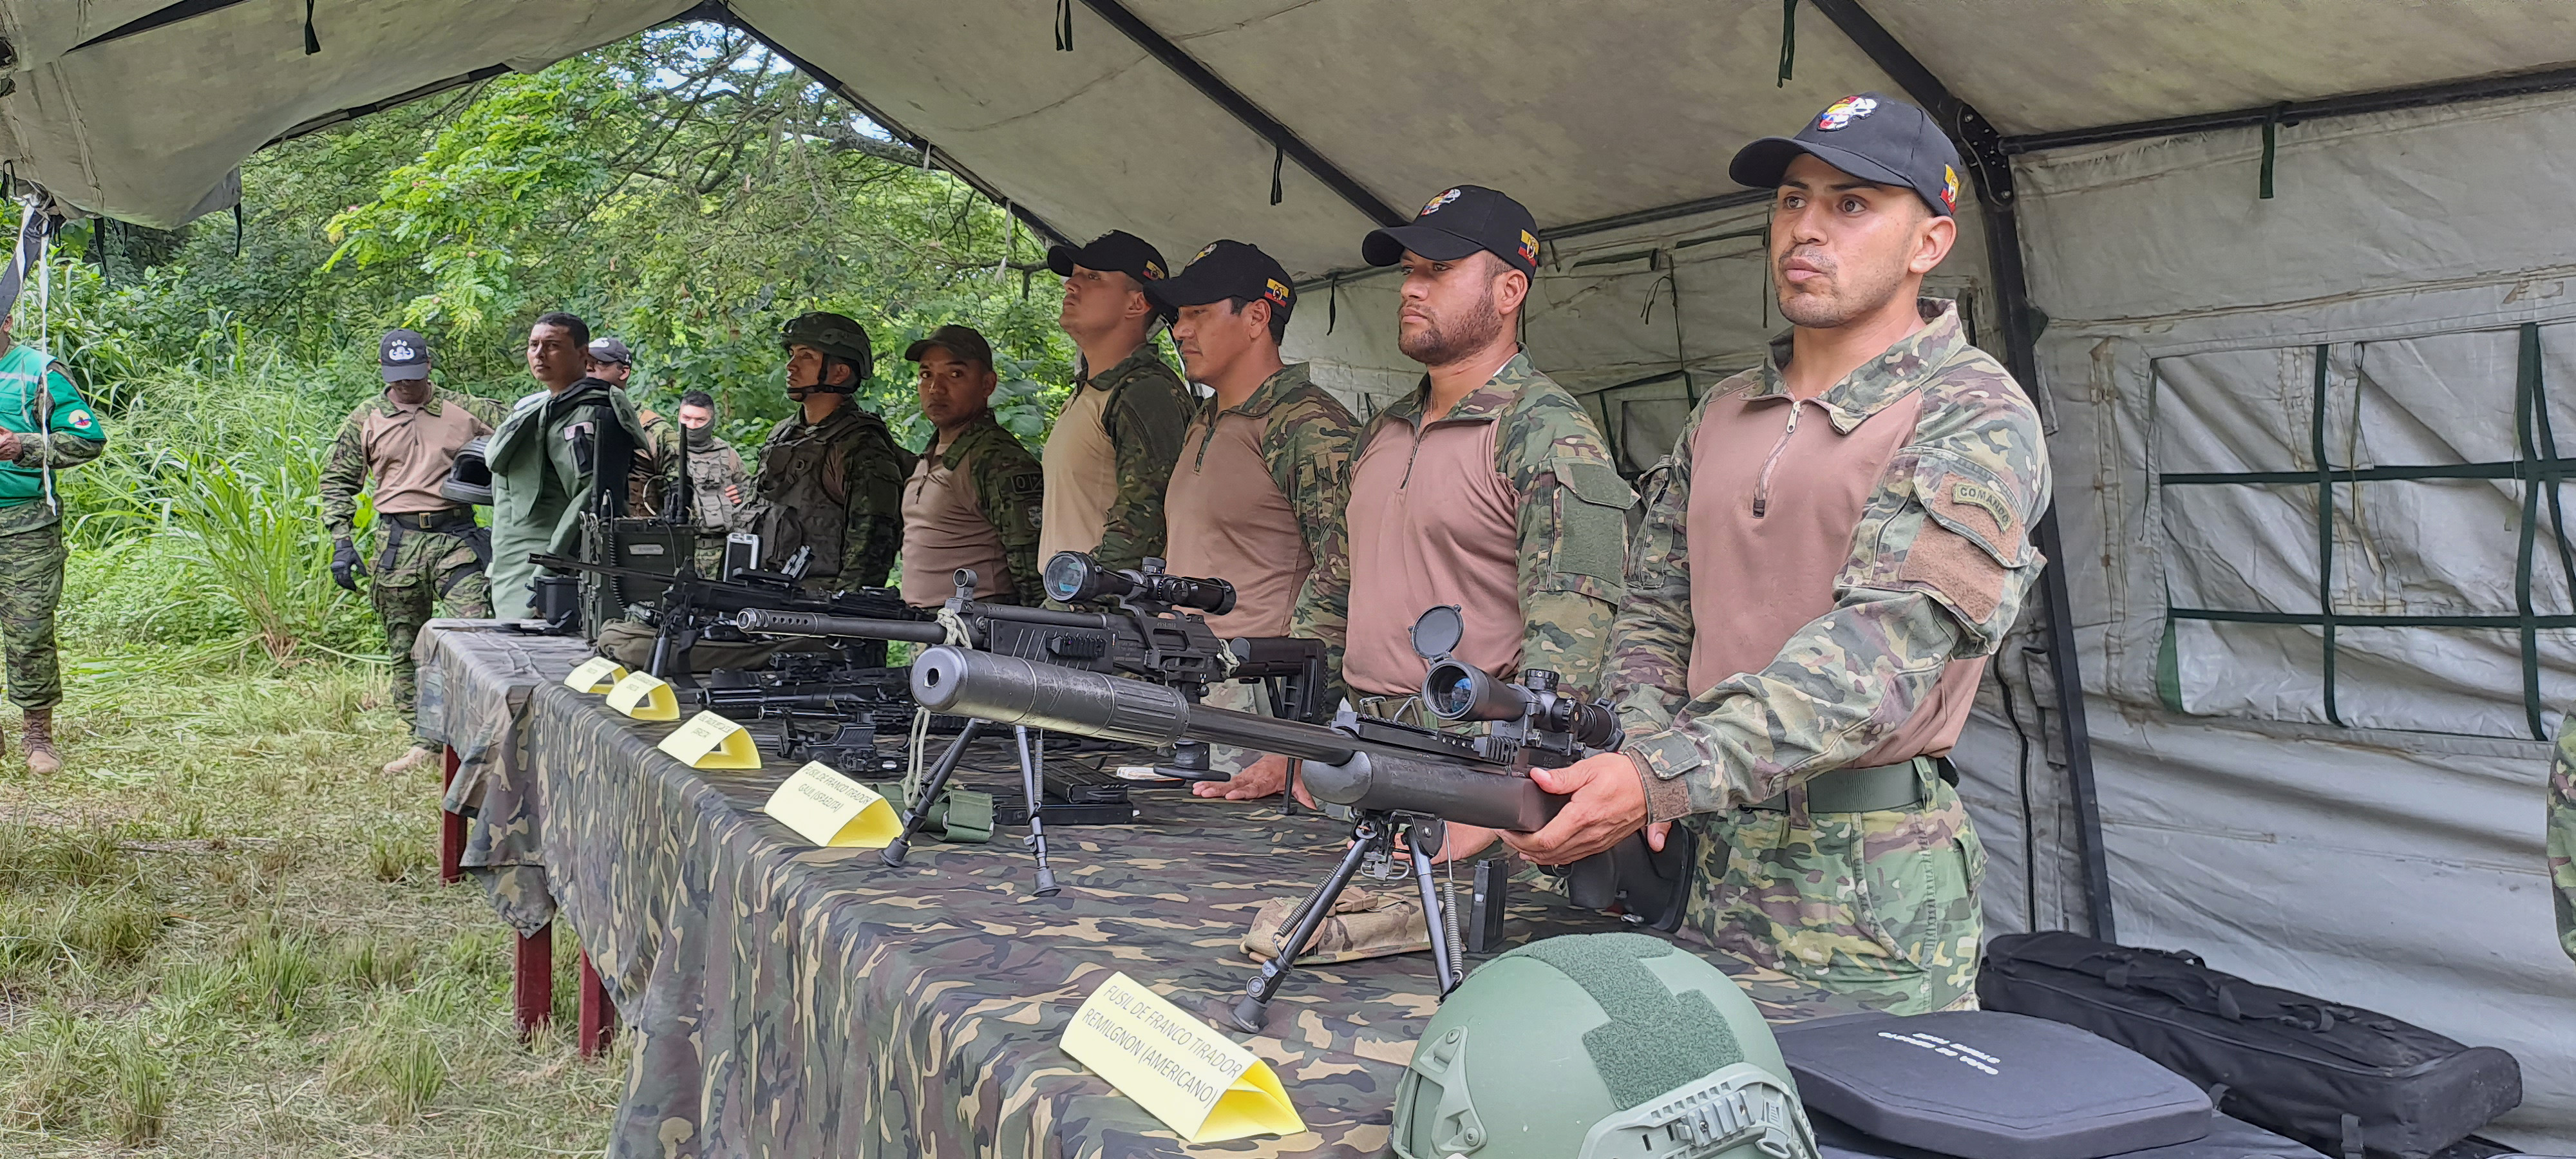 Fuerzas Armadas del Ecuador on X: #Guayas En Bastión Popular al norte de  #Guayaquil, durante una operación de control de armas, efectivos de las  @FFAAECUADOR decomisaron: 🔸01 Arma traumática 🔸07 Municiones cal.